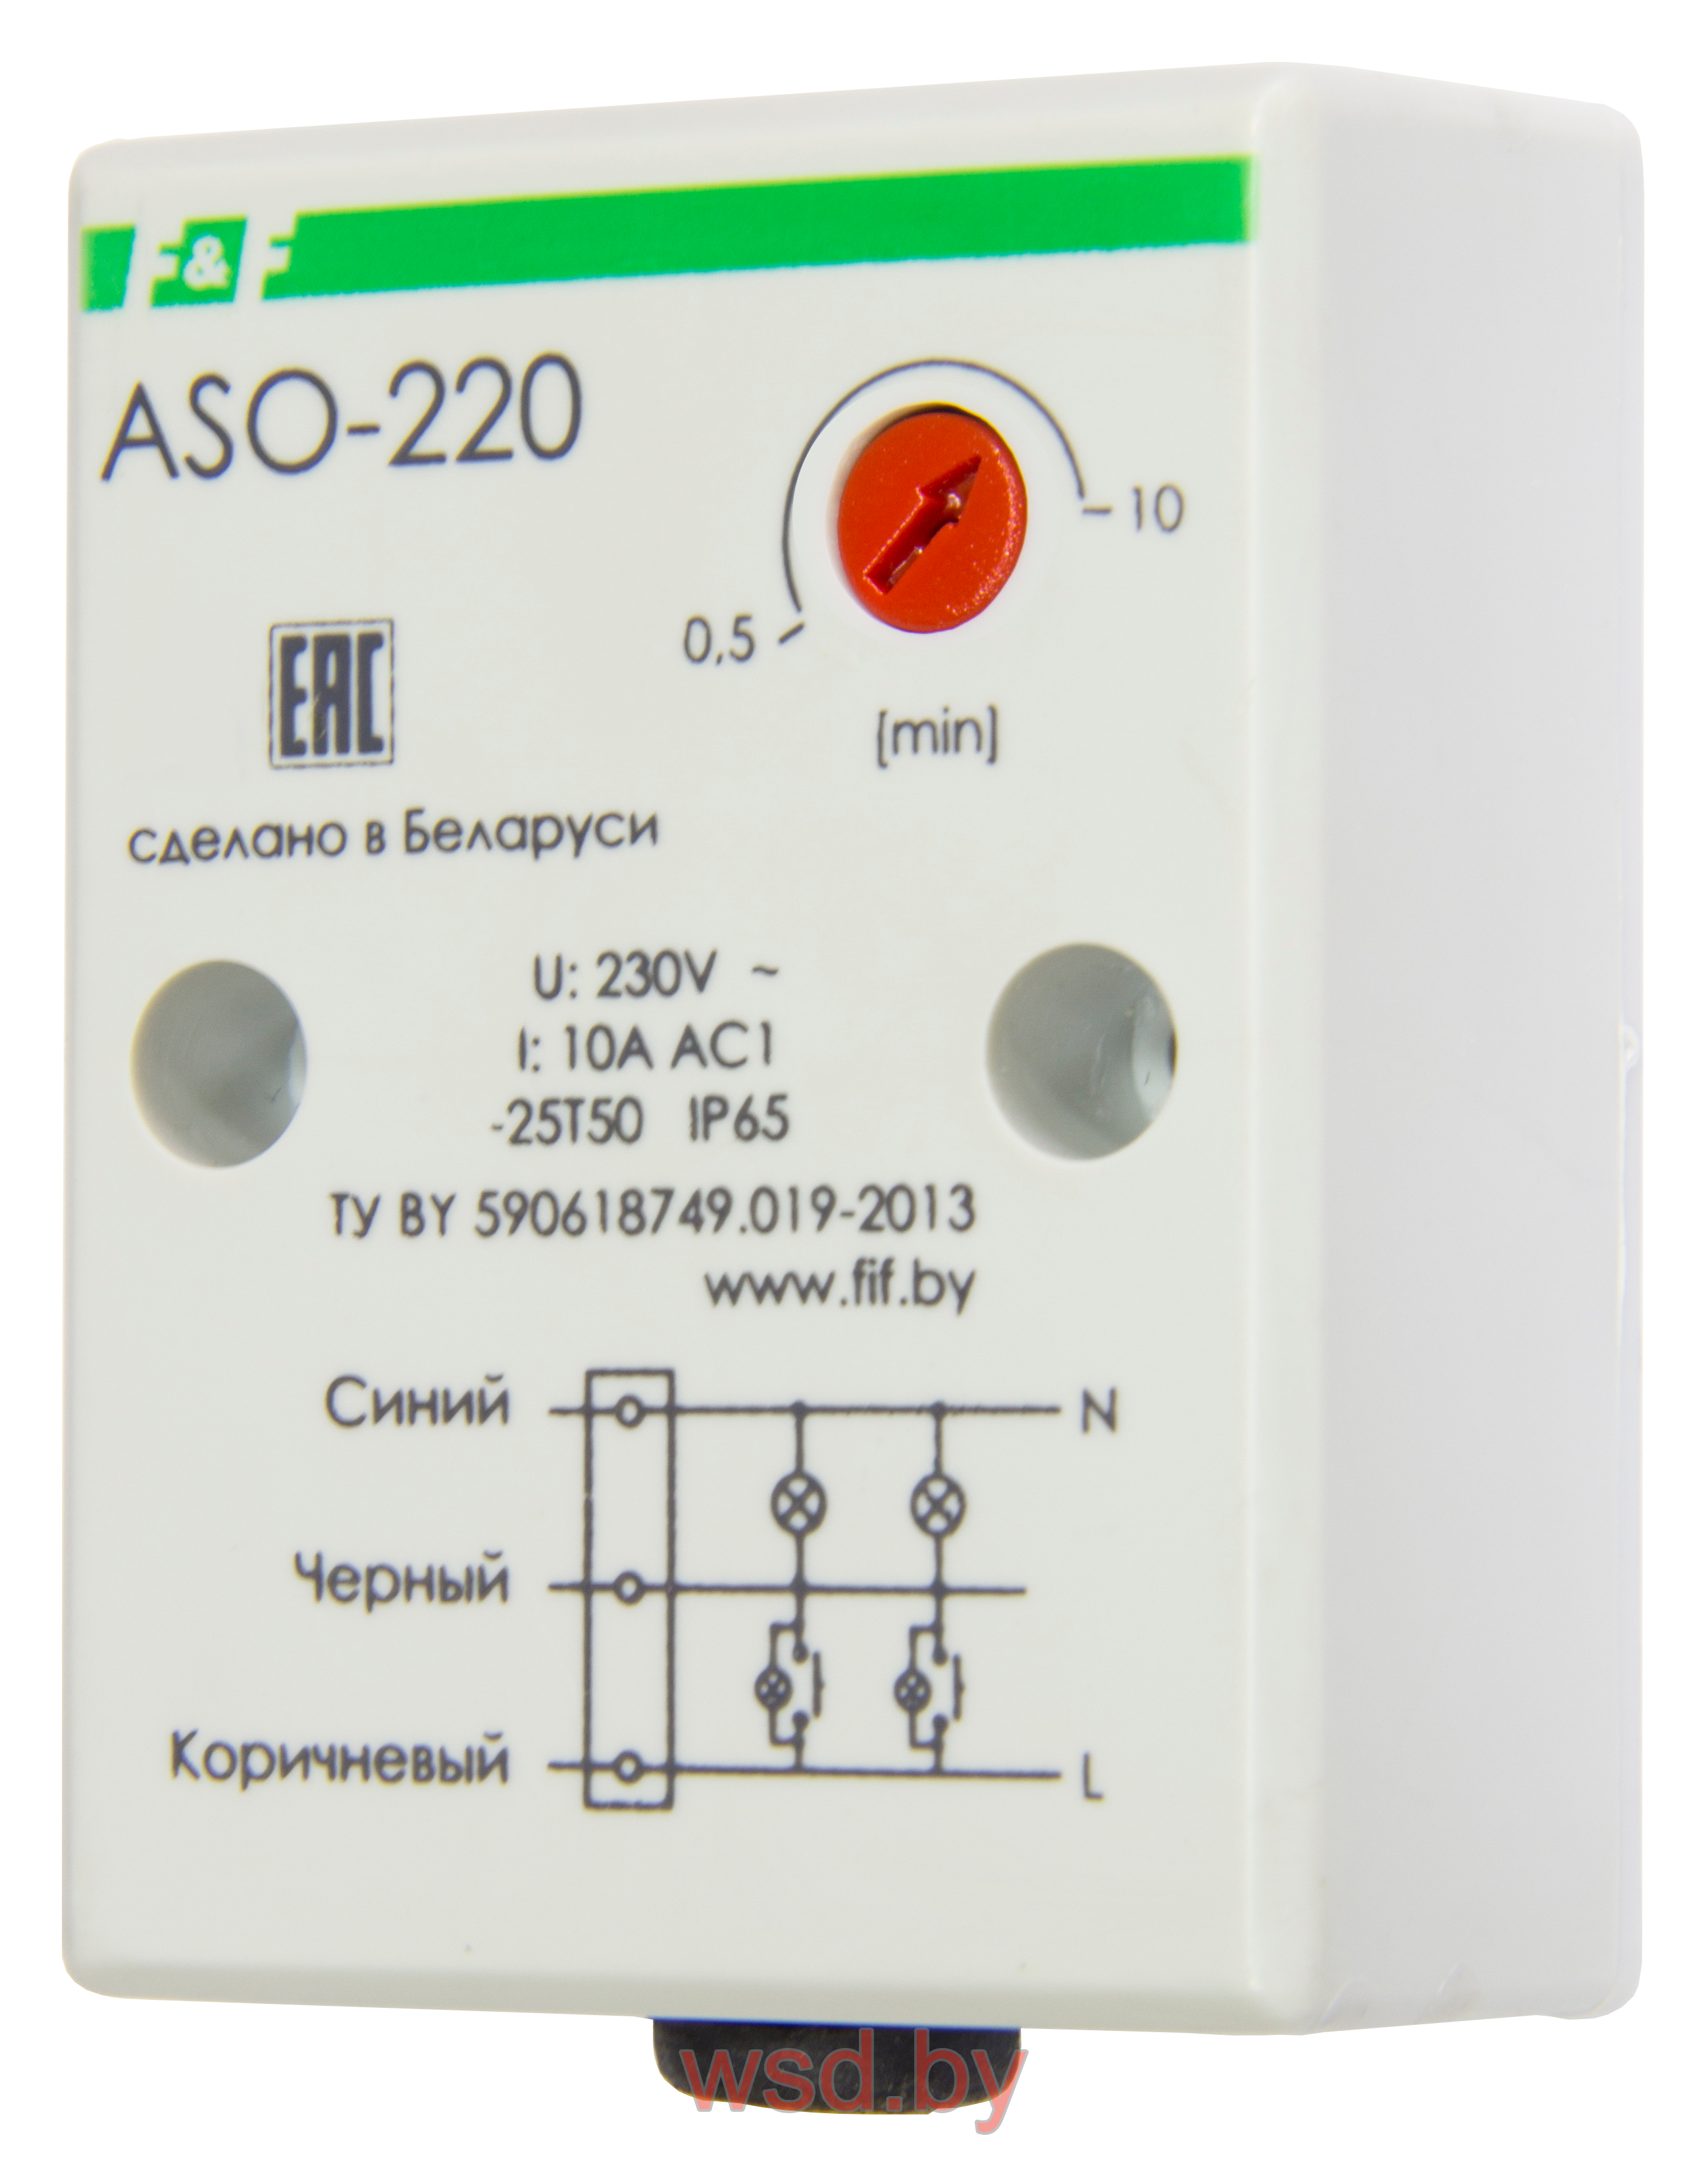 ASO-220 монтаж на плоскость 230В AC 10А 1NO IP65